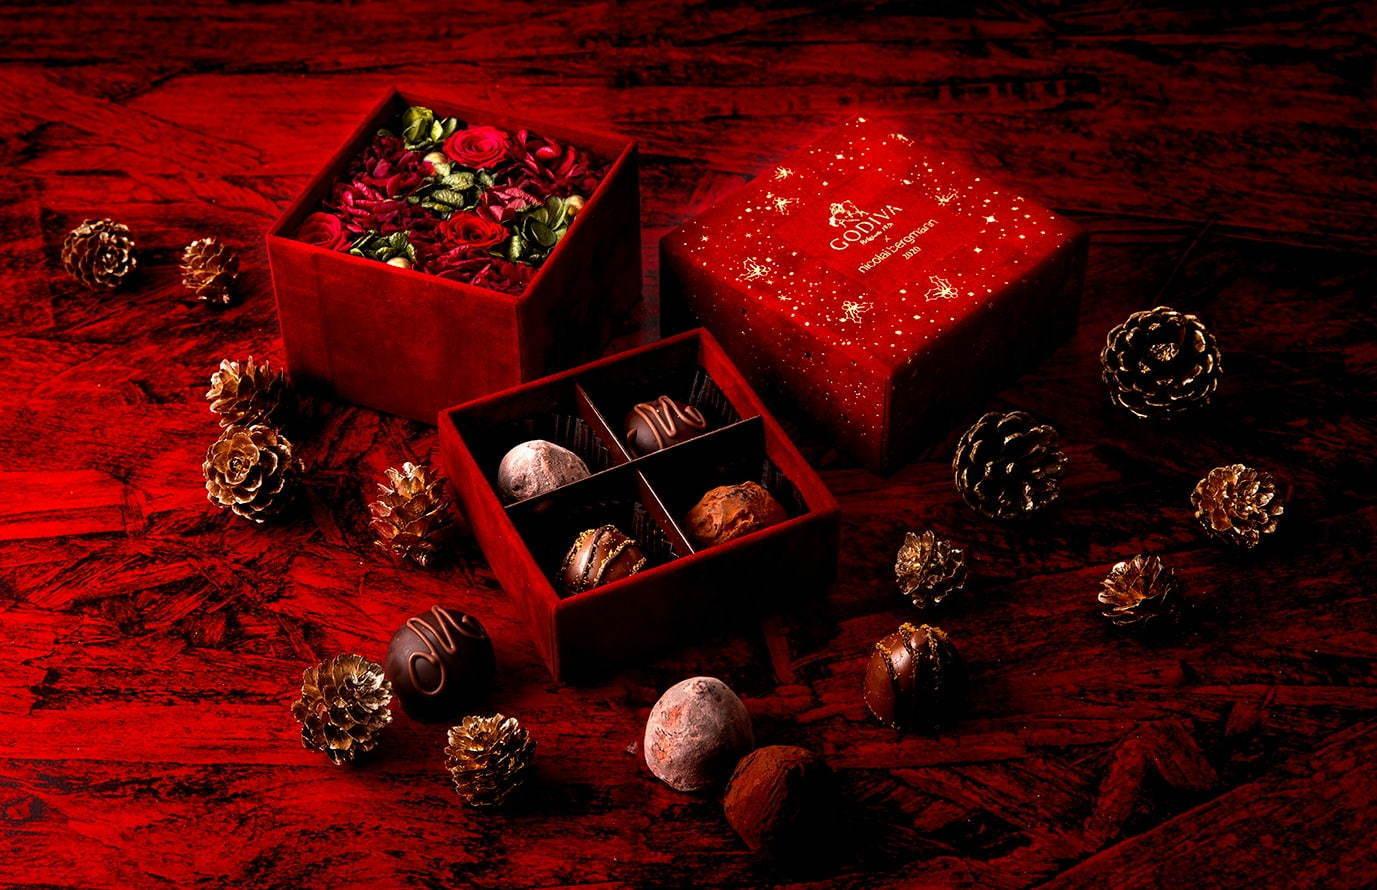 ニコライ バーグマン×ゴディバのクリスマス限定ボックス、4粒のトリュフとプリザーブドフラワーのセット コピー